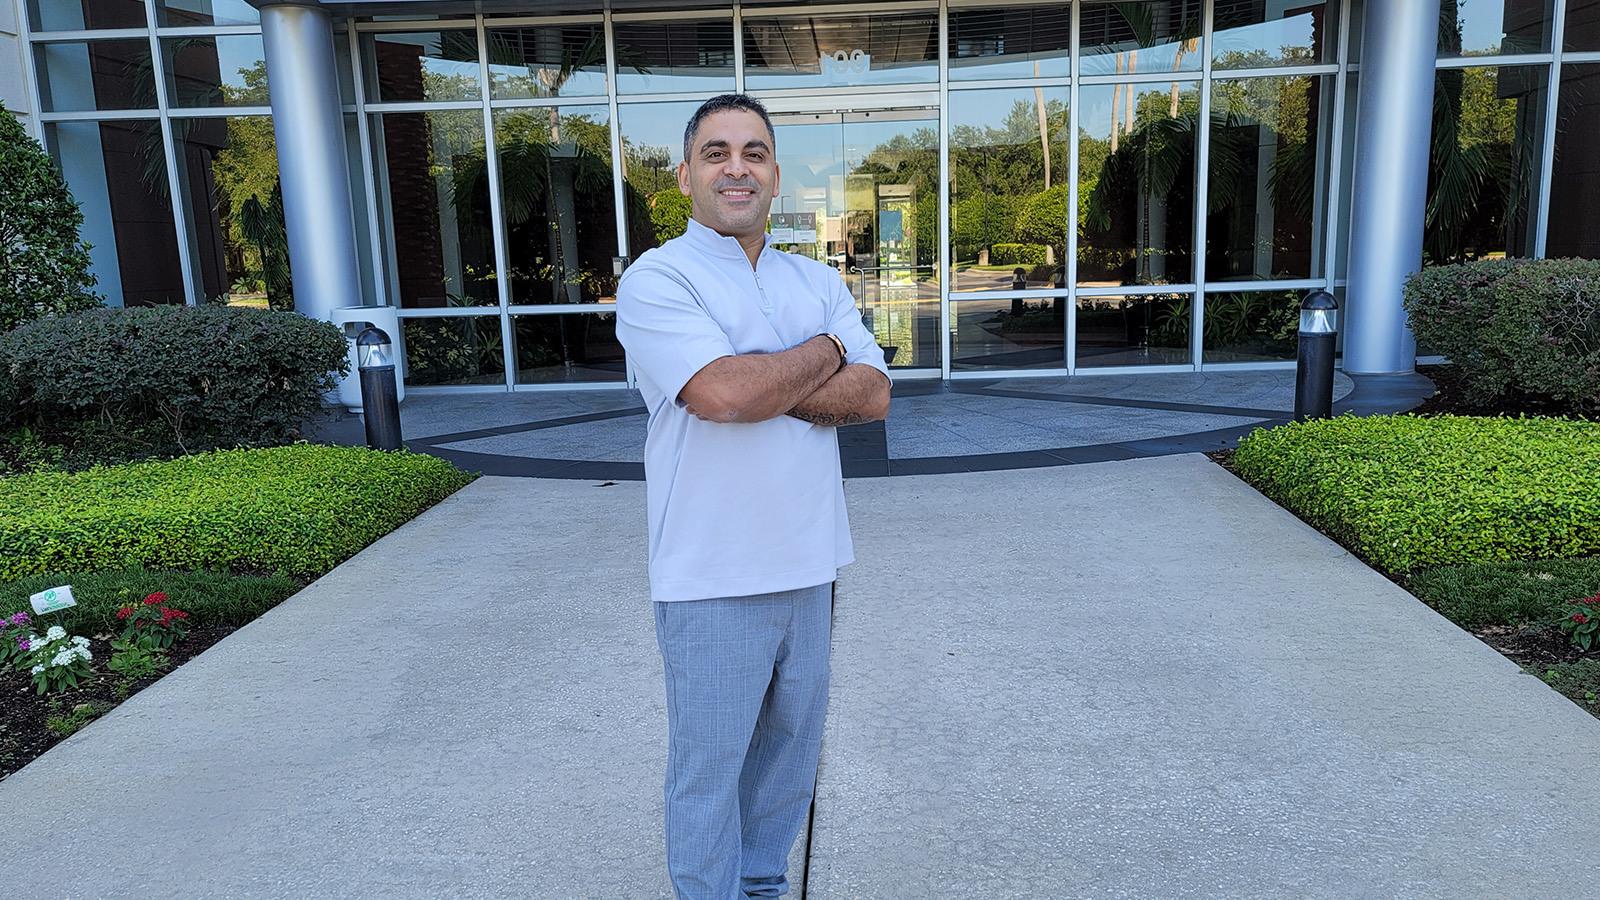 Brian Alvarado双臂交叉站在德勤大楼前微笑着. 他穿着灰色休闲裤和蓝色衬衫.